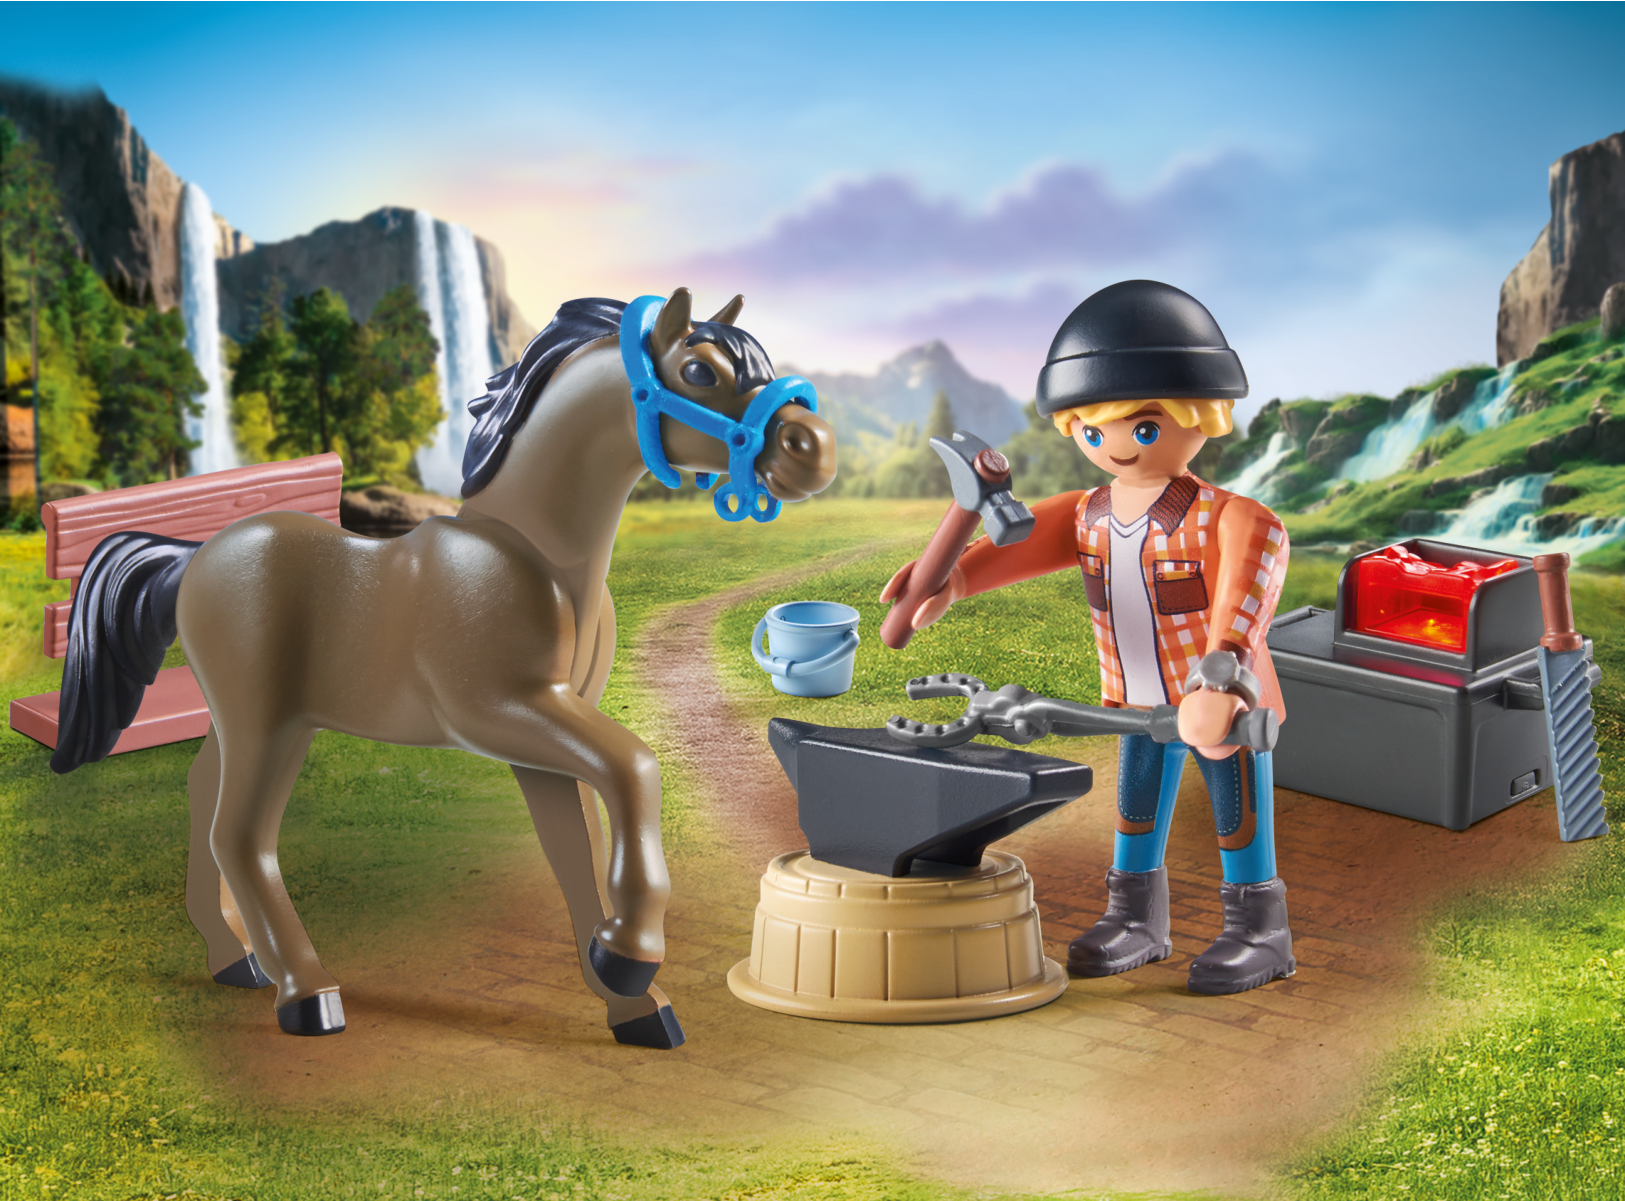 Playmobil 71357 maniscalco con cavallo per bambini dai 4 anni in su - Playmobil